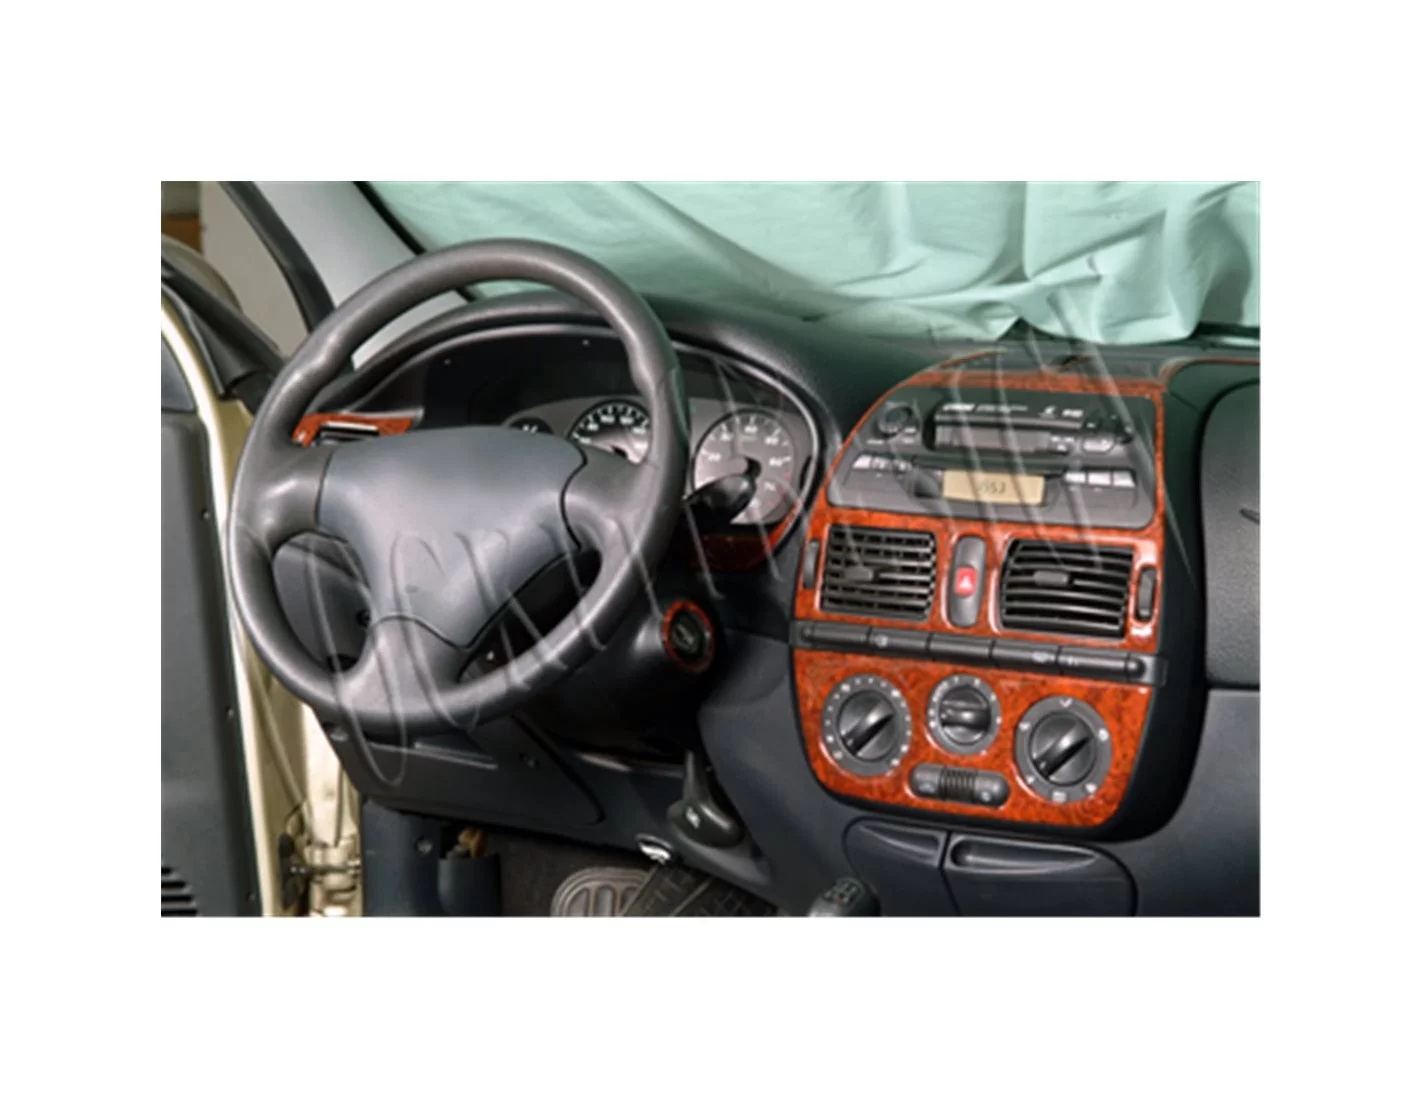 Fiat Brava-Marea 10.1995 3M 3D Interior Dashboard Trim Kit Dash Trim Dekor 8-Parts